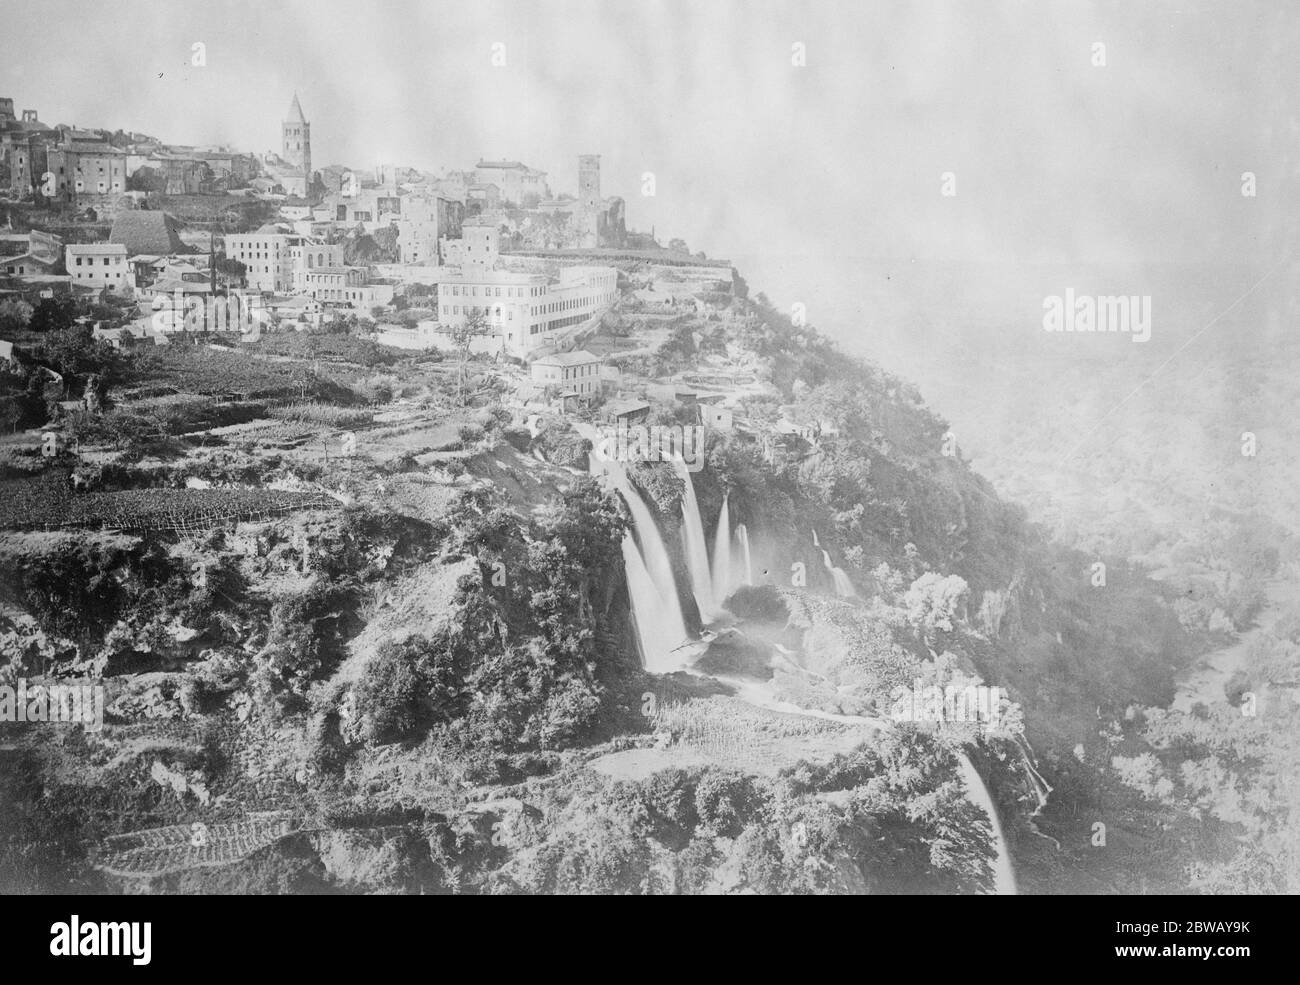 Cascades à Tivoli dans la région du Latium, dans le centre de l'Italie, les chutes d'eau sont sur le point d'être détruites décembre 1921 Banque D'Images